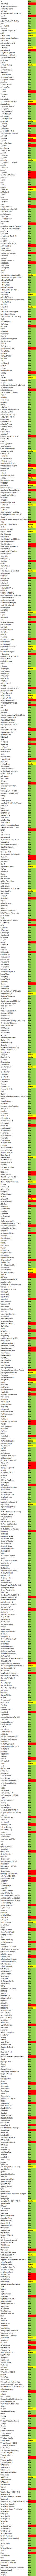 Liste complète des Tweak compatible sur iPhone iOS 8.1.2 Jailbreak